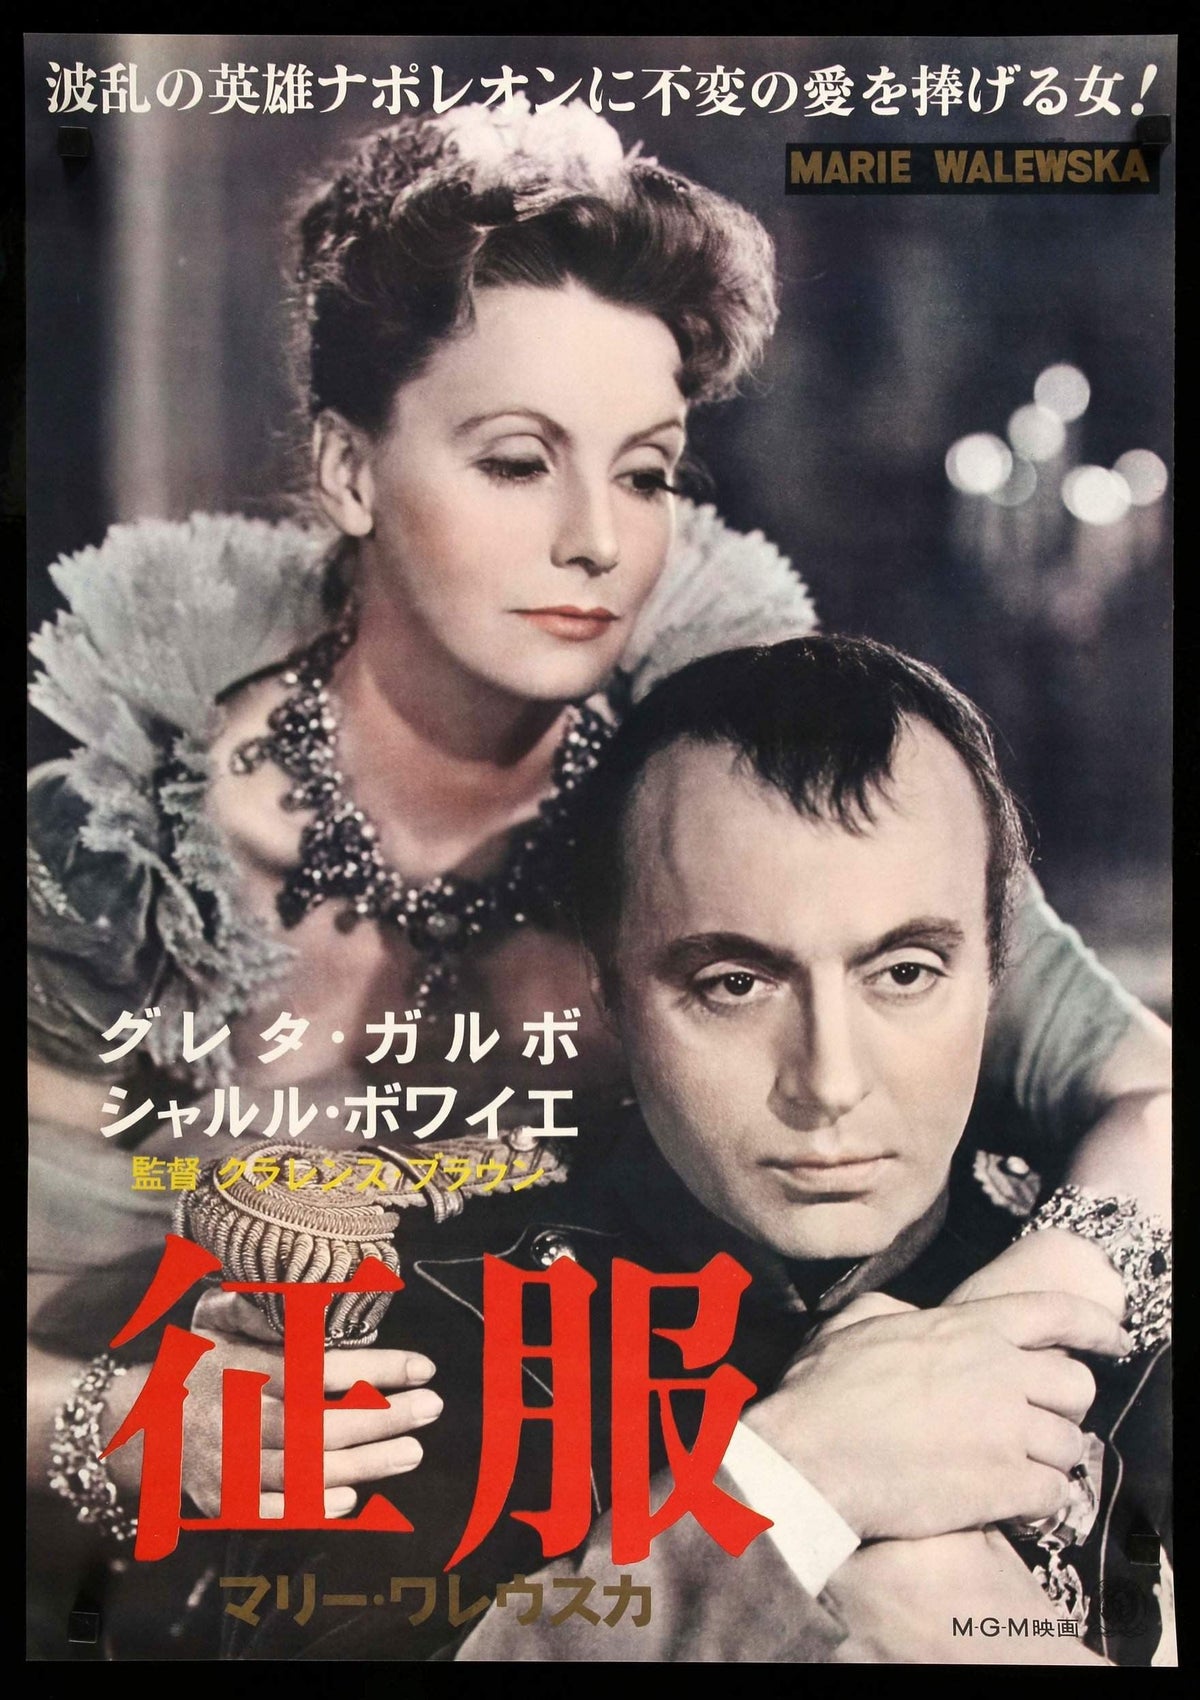 Conquest (1937) original movie poster for sale at Original Film Art